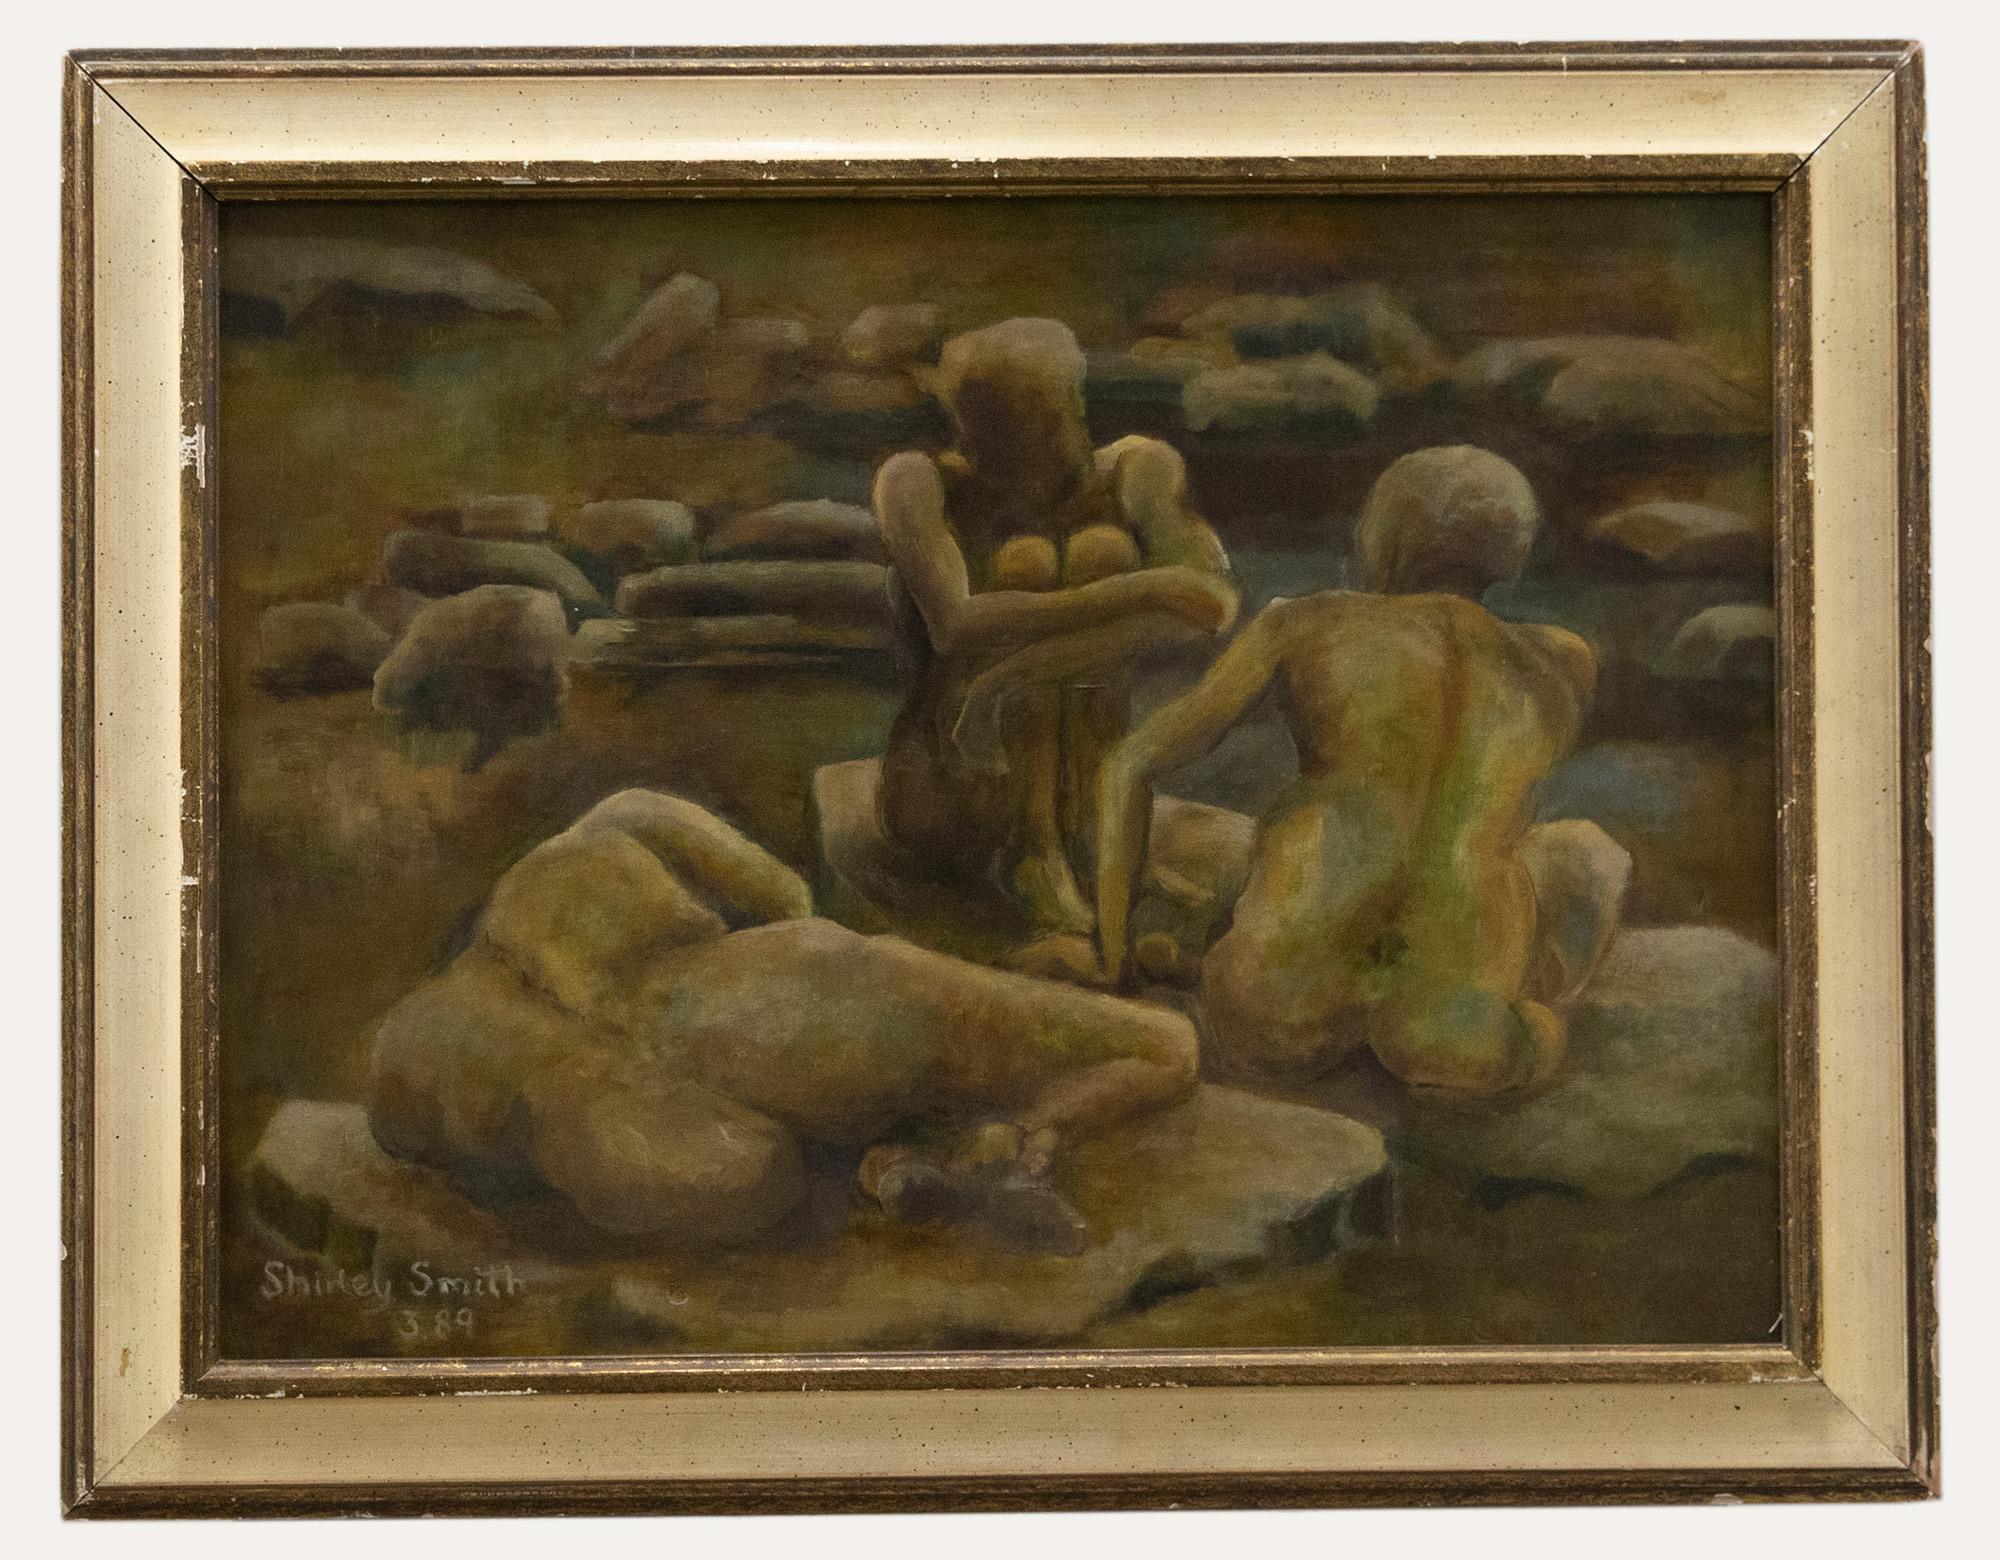 Unknown Nude Painting – Shirley Smith - Gerahmtes Ölgemälde des 20. Jahrhunderts, surrealistische Lebensstudie